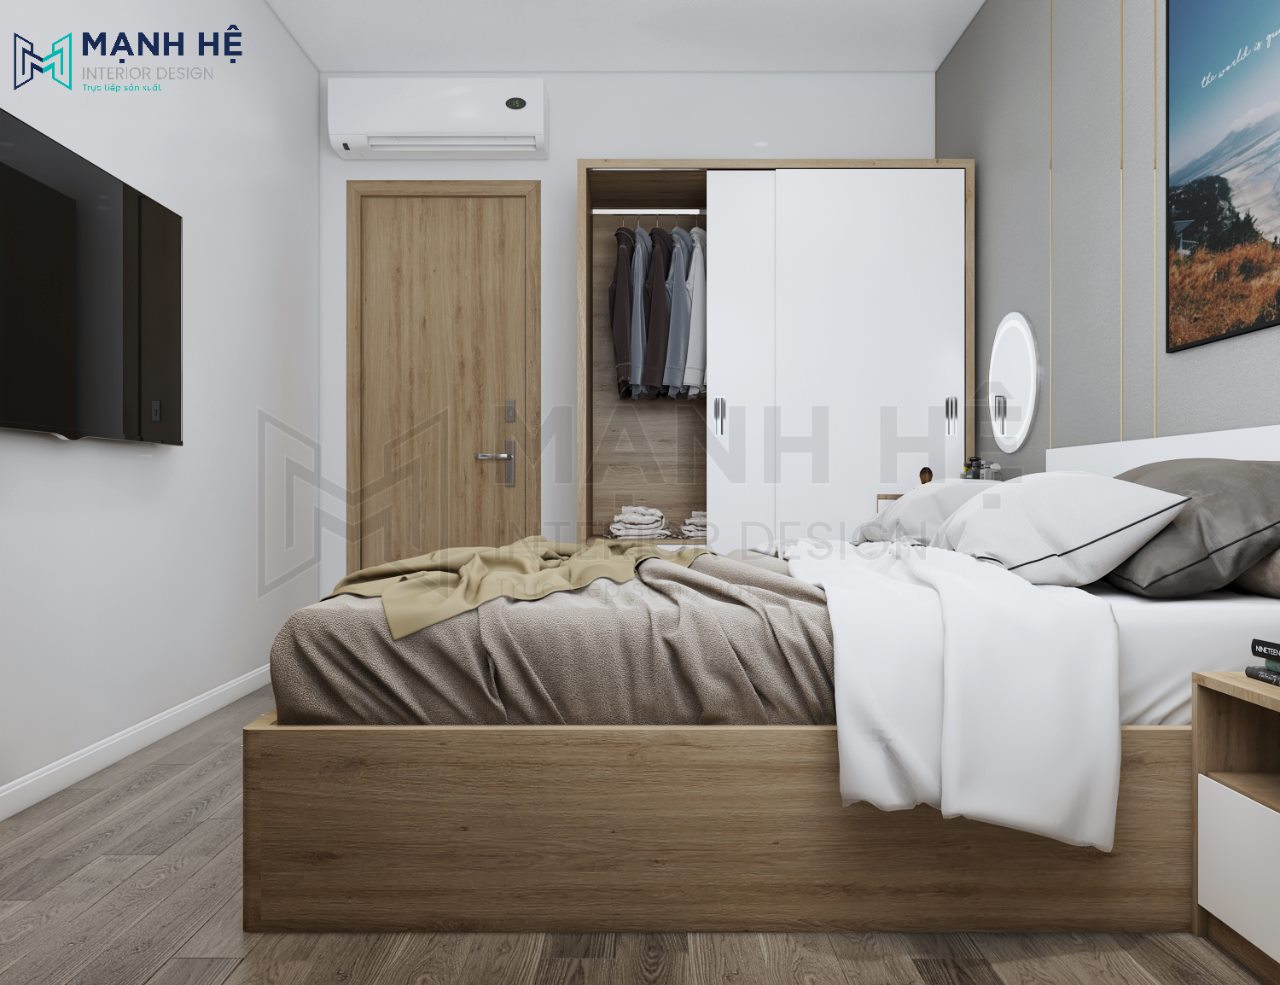 Kiểu tủ quần áo cửa lùa nhỏ gọn sẽ giúp cho phòng ngủ cảm thấy nhẹ nhàng hơn, tiết chế sự cầu kỳ trong nội thất